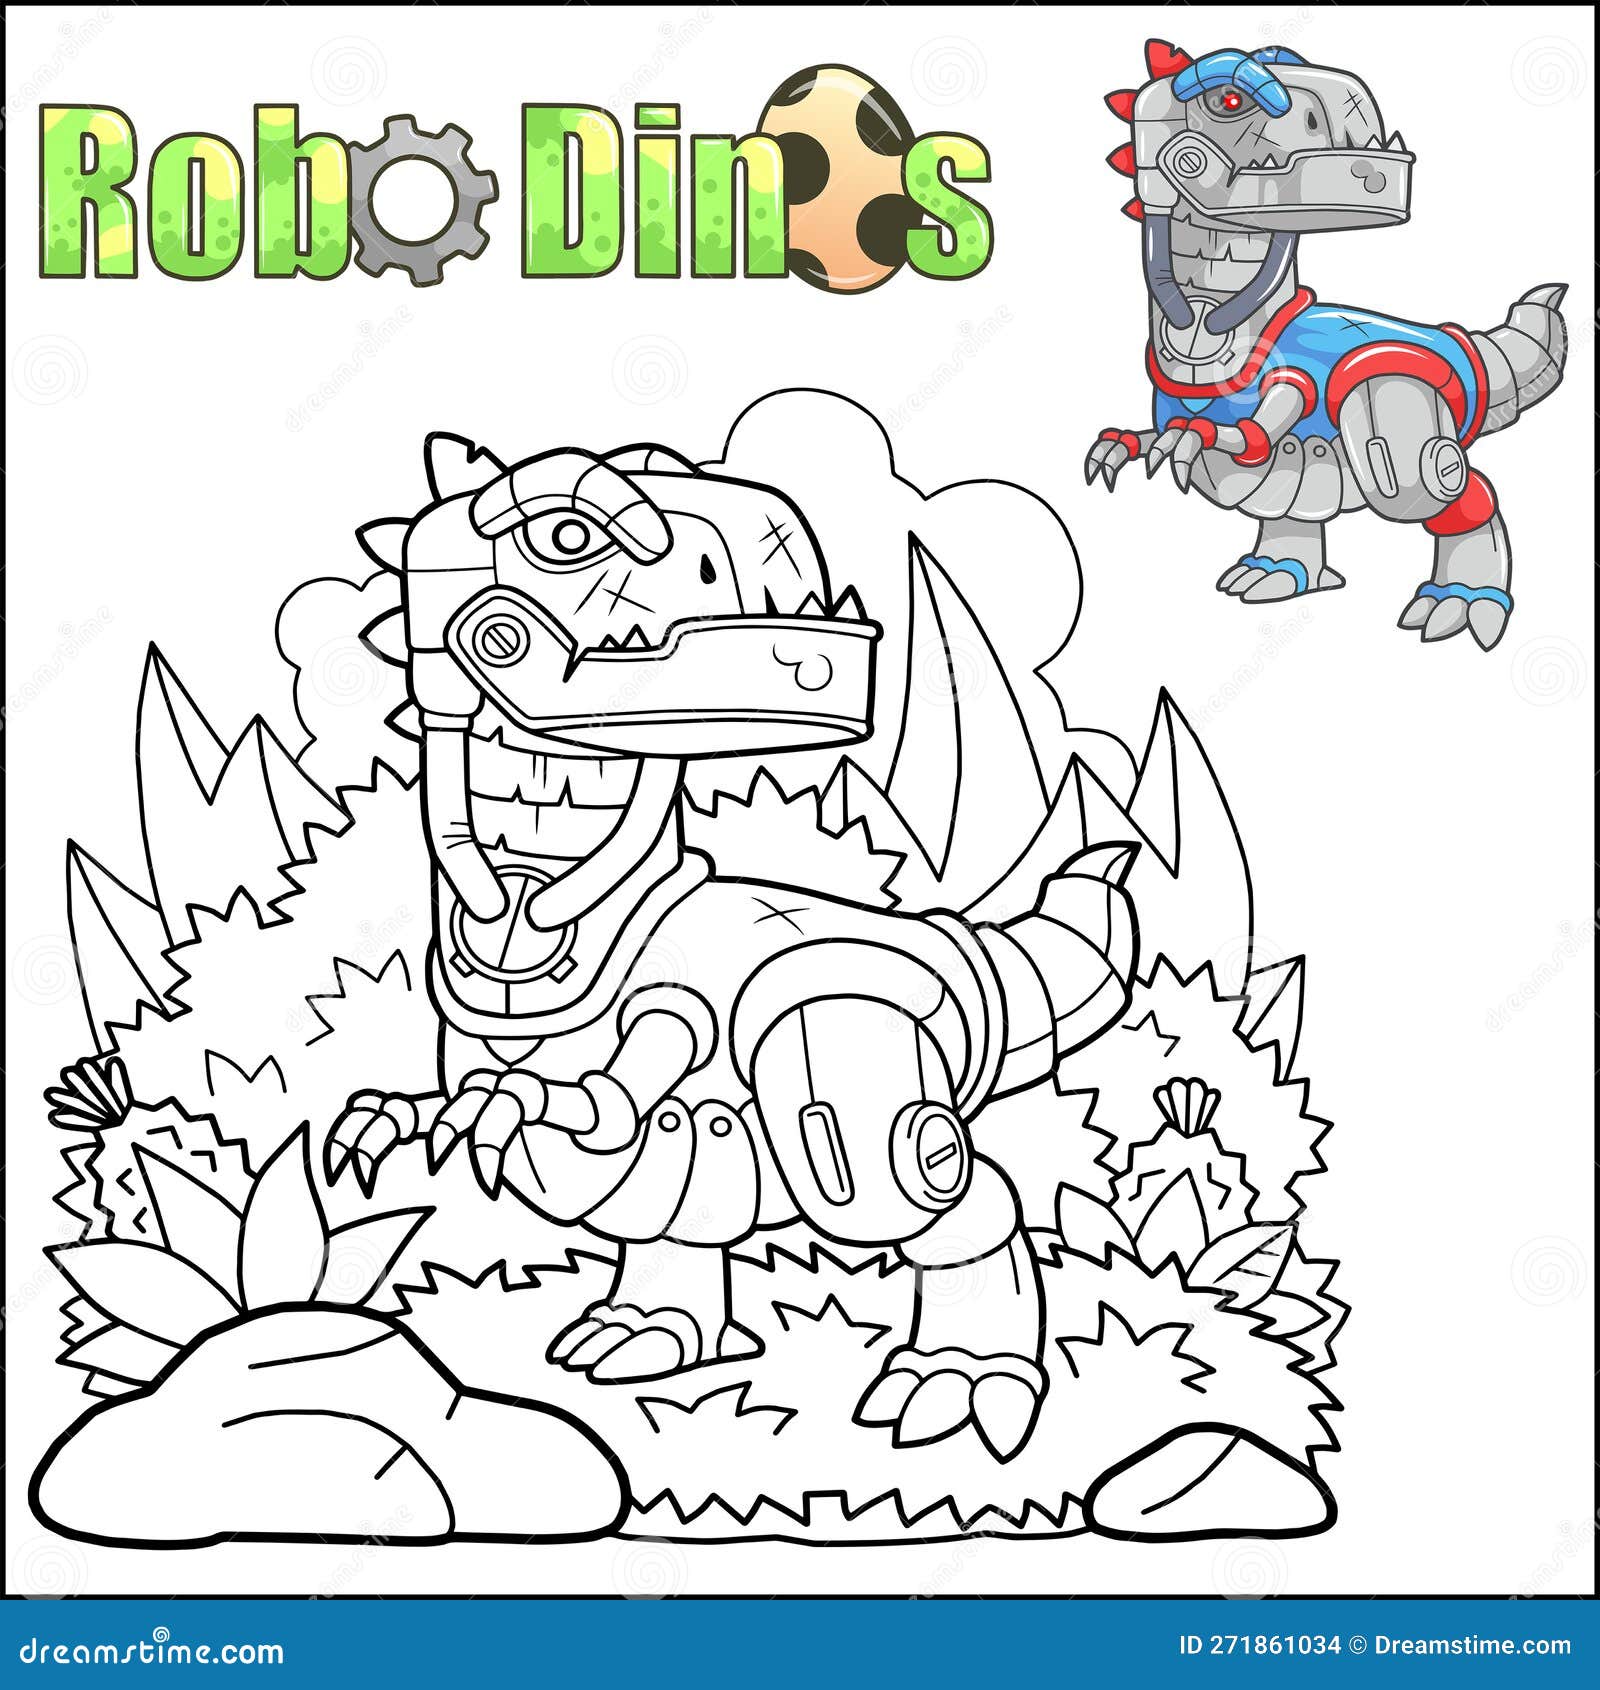 Cartoon robot dinosaur stock vector illustration of fantasy